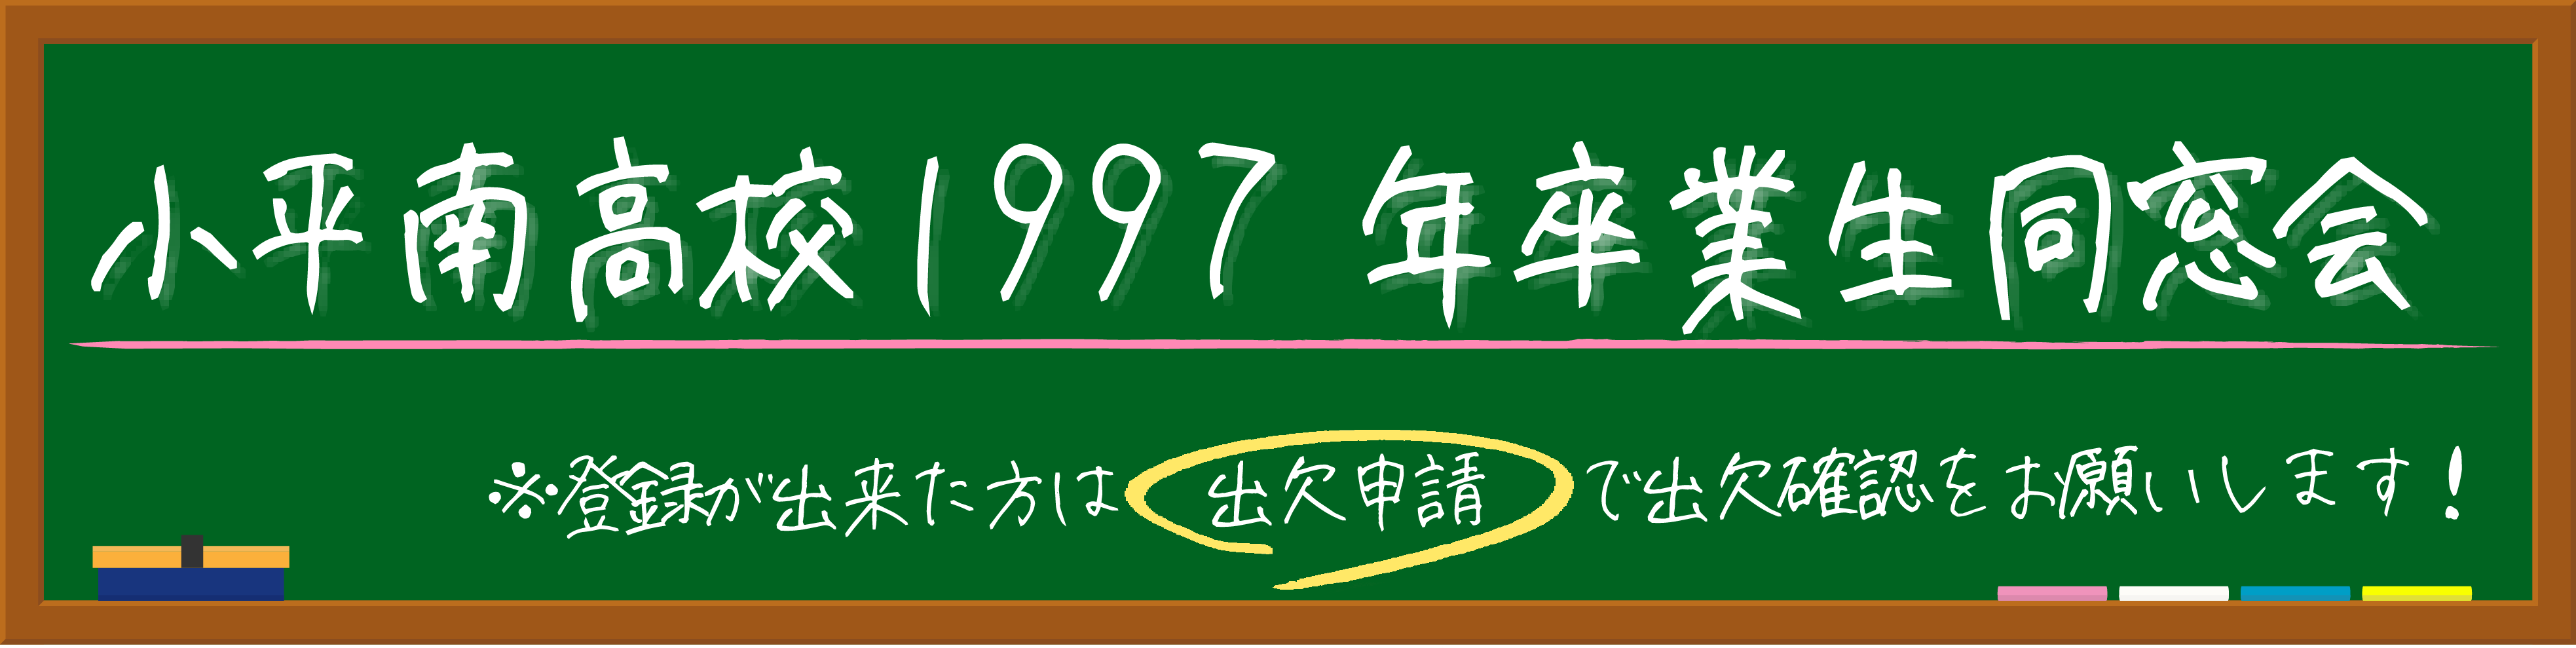 小平南高等学校1997年卒業生同窓会